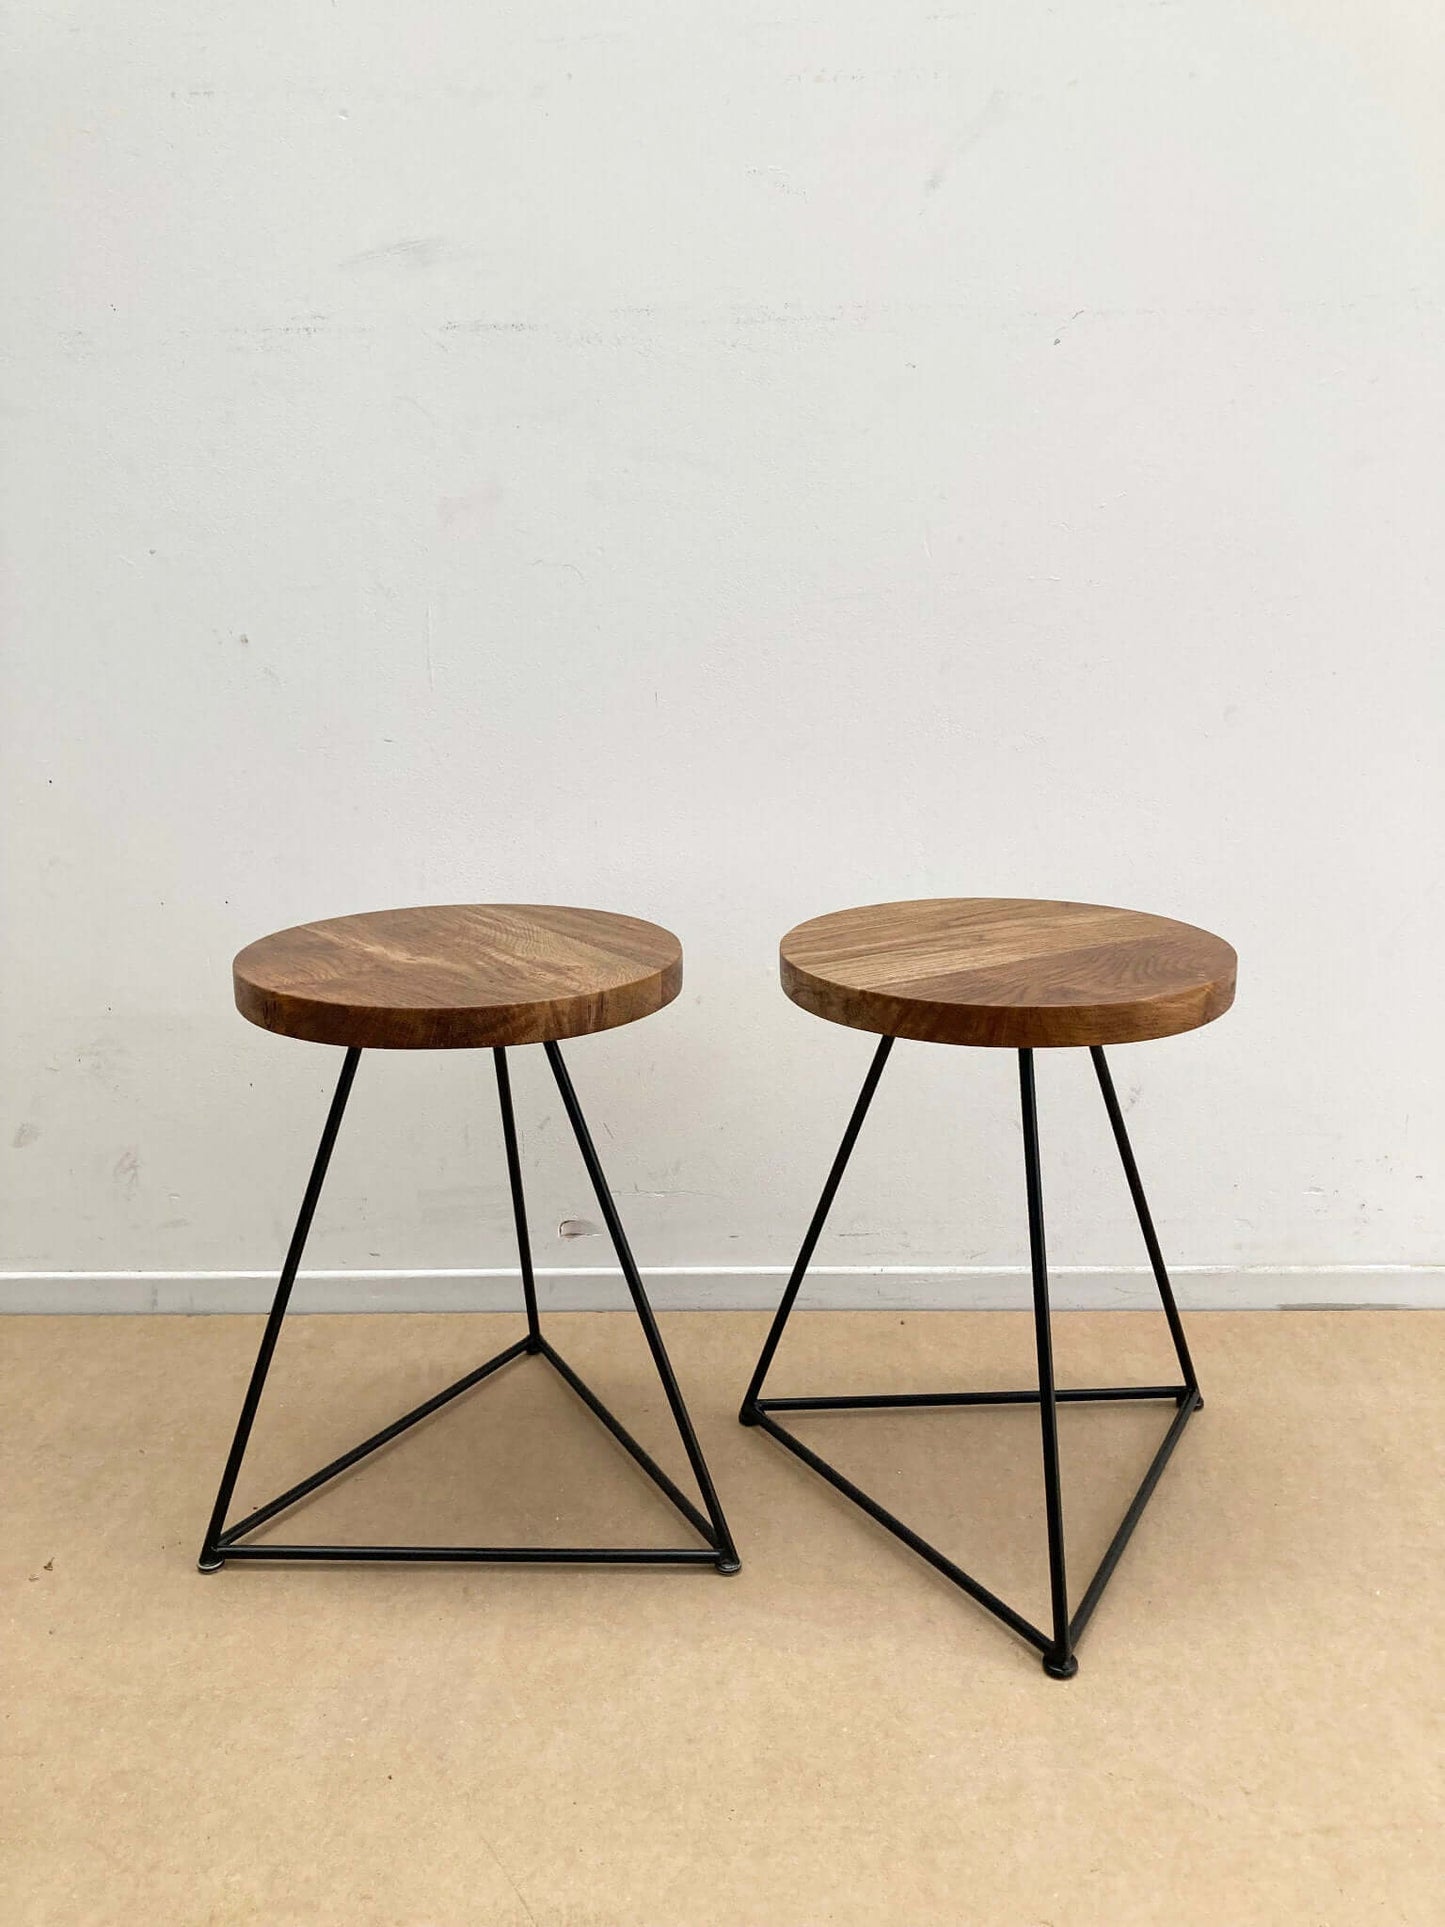 Hardwood stool with optional base.